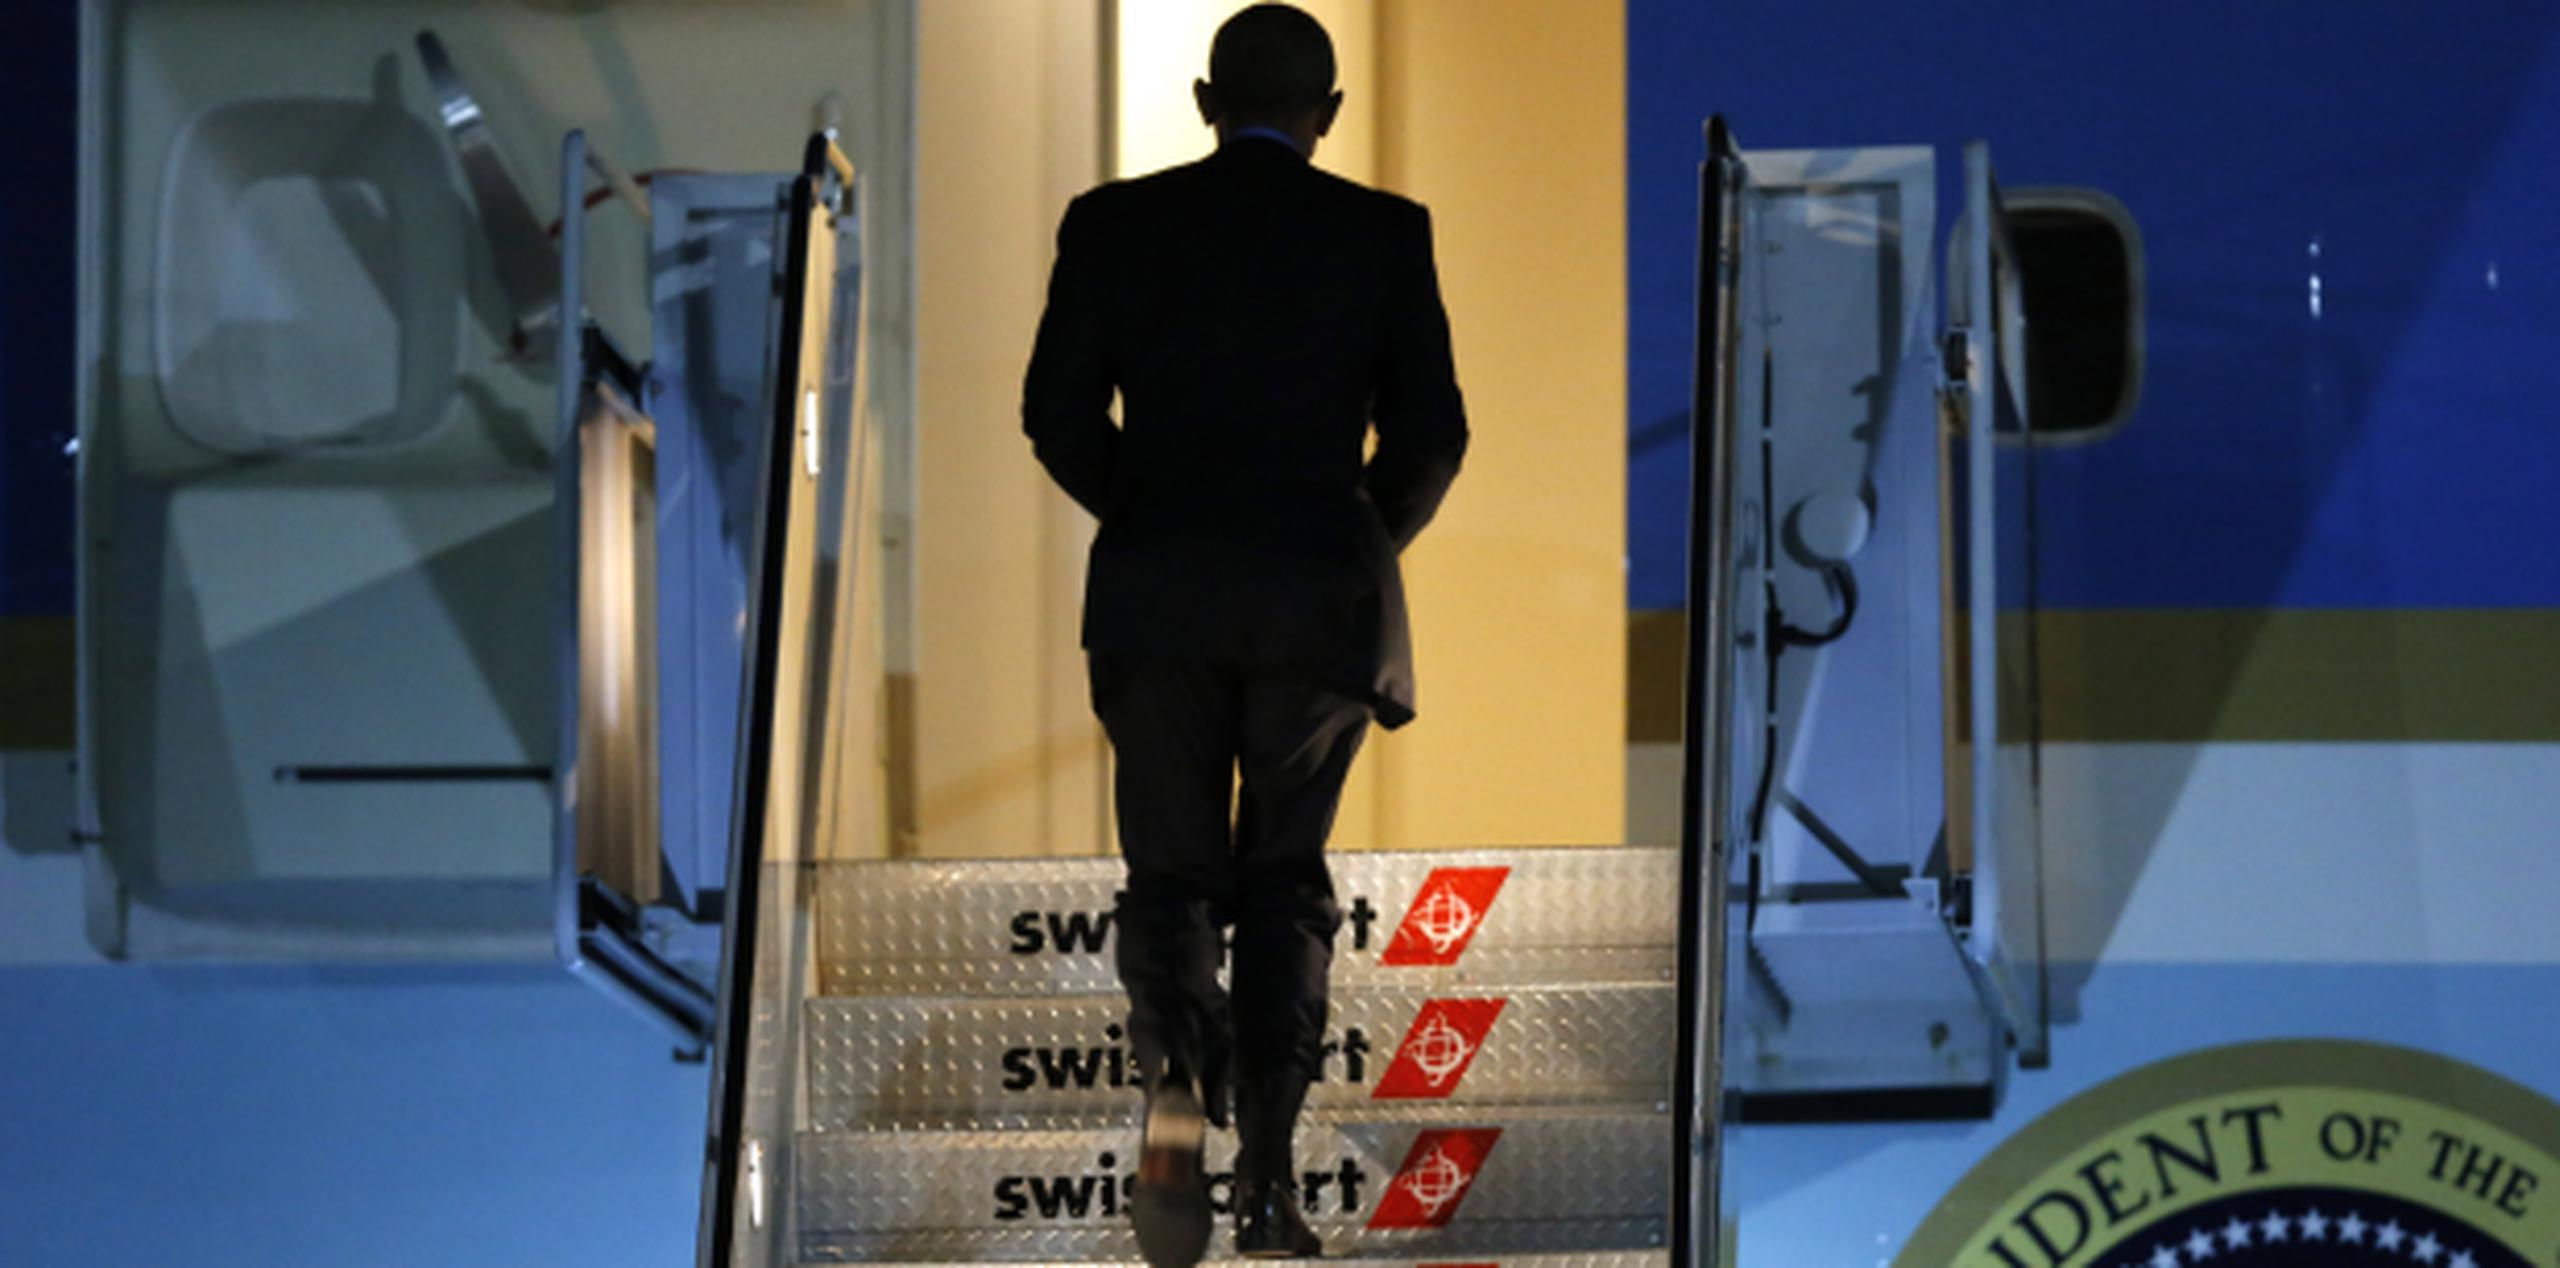 Obama abordó anoche el Air Force Once camino a Washington tras visitar Nueva York para actividades del Partido Demócrata. (AP)